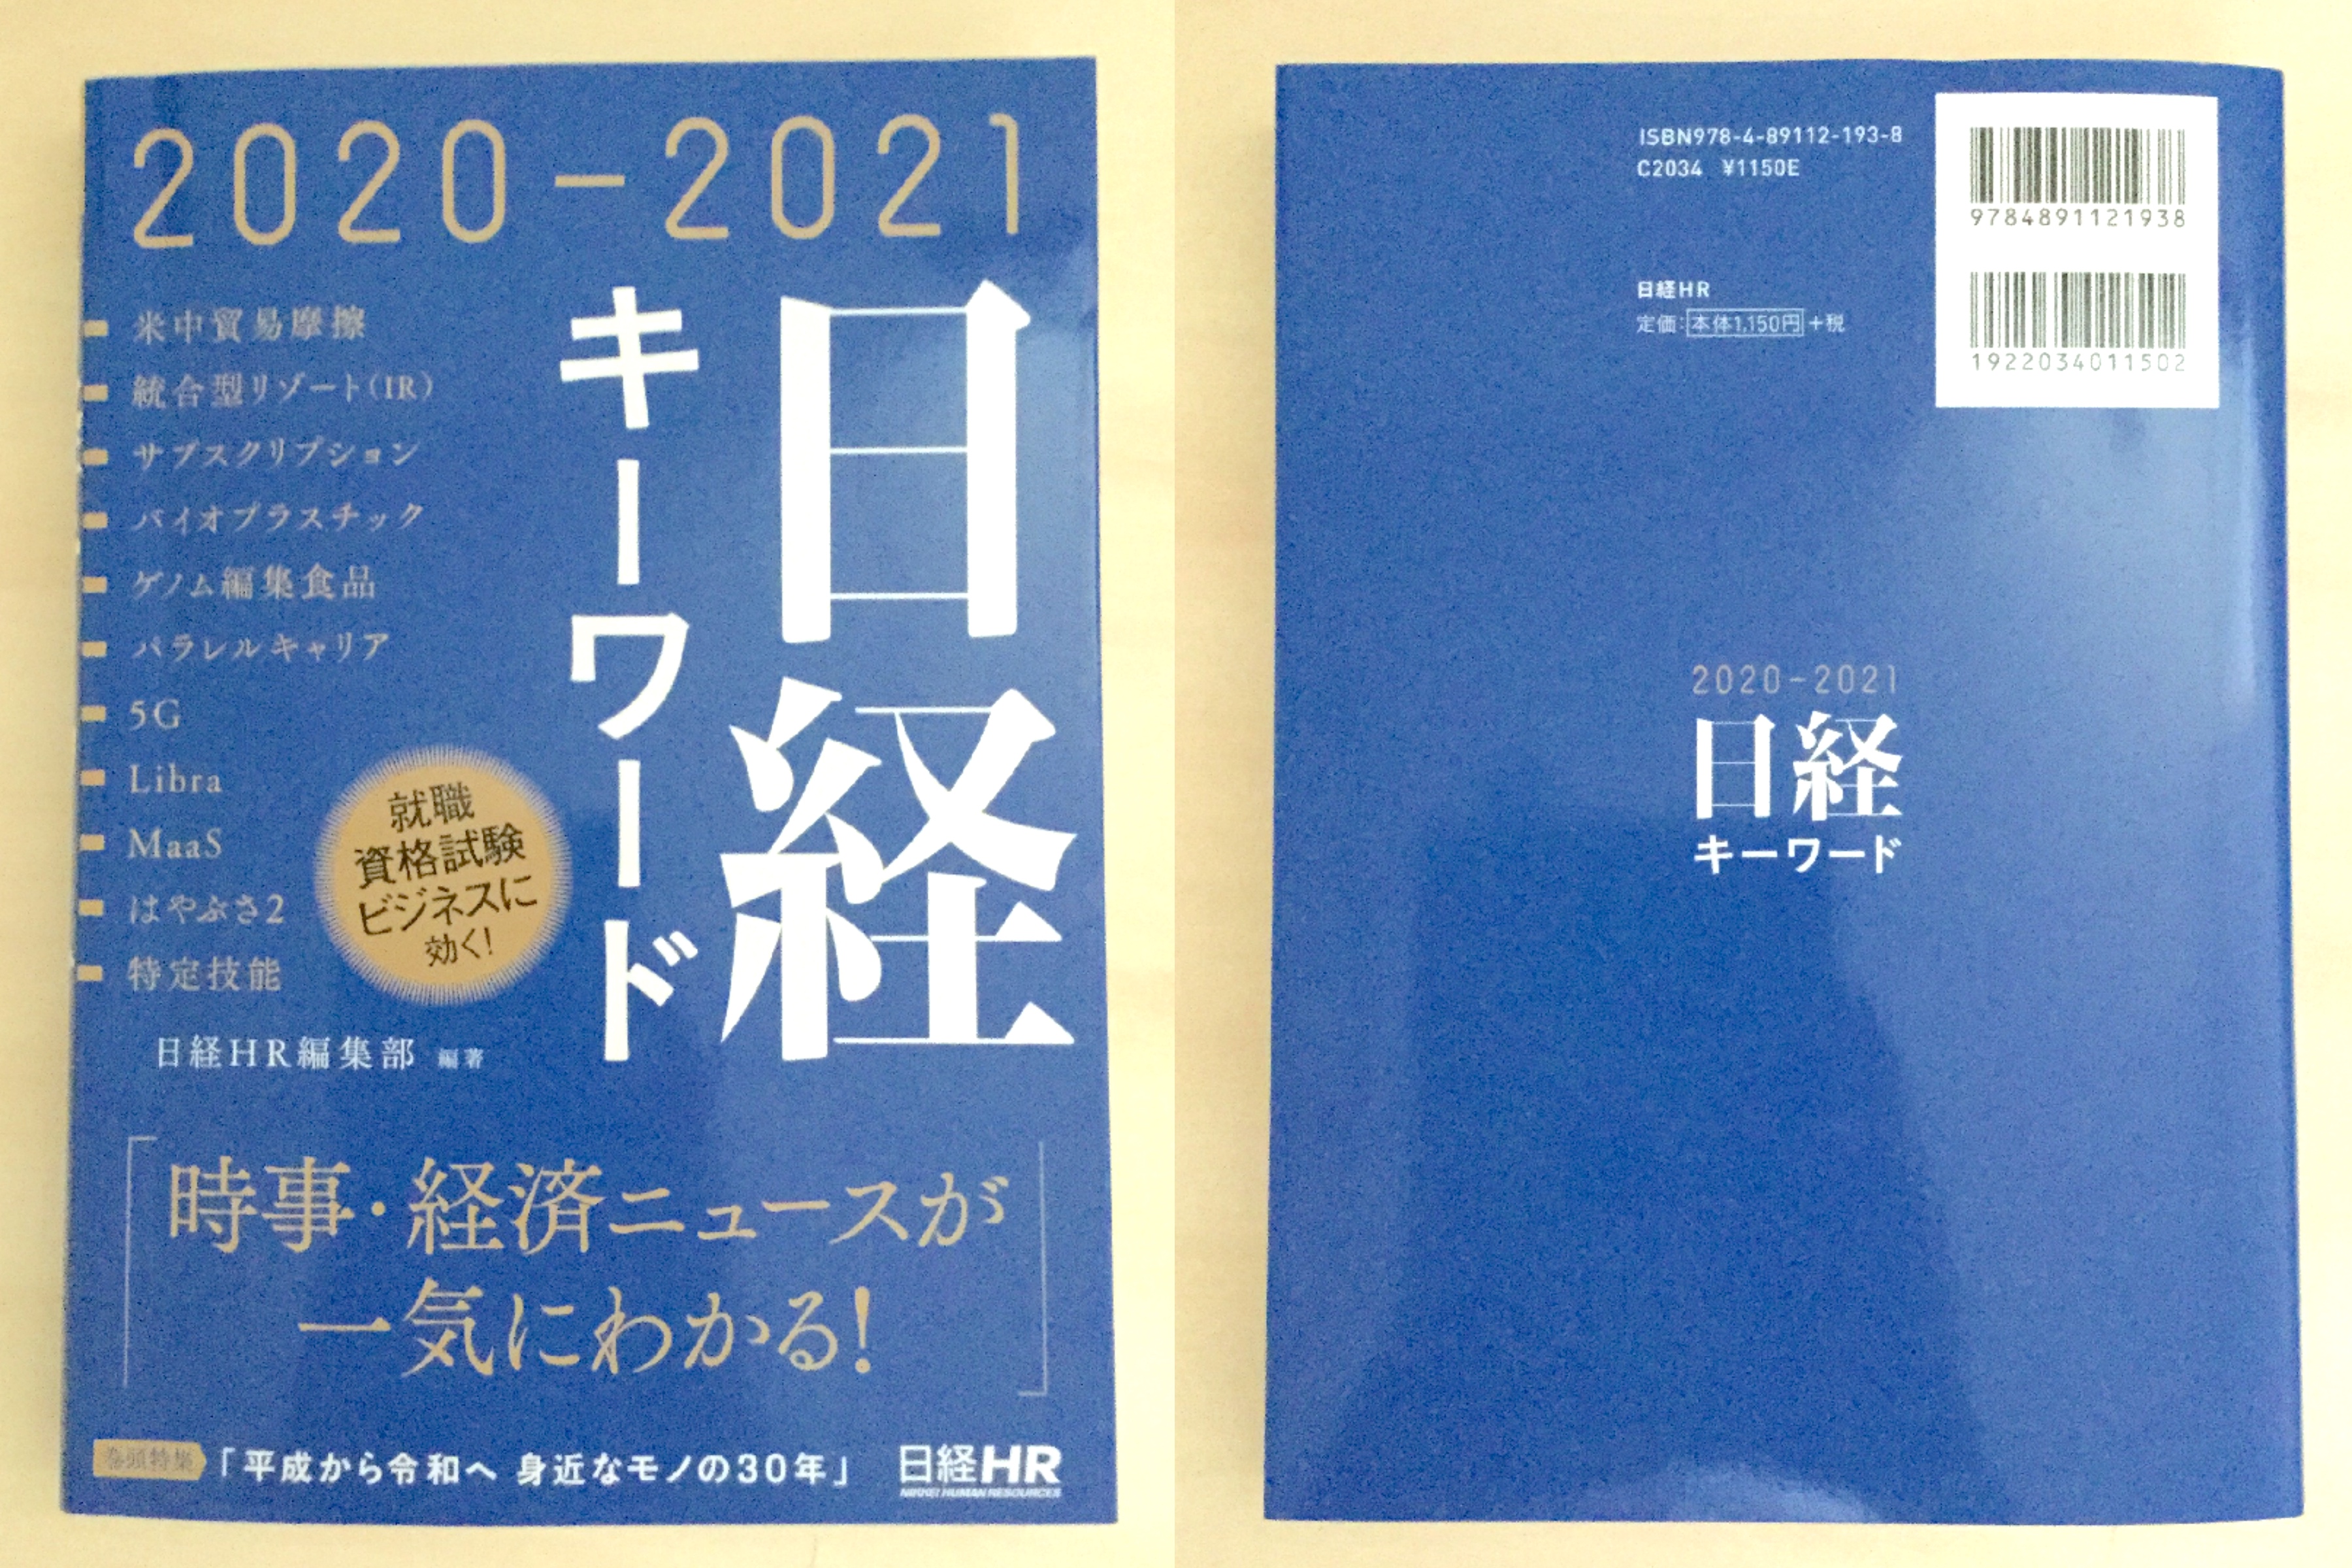 日経キーワード 2021-2022 - ビジネス・経済